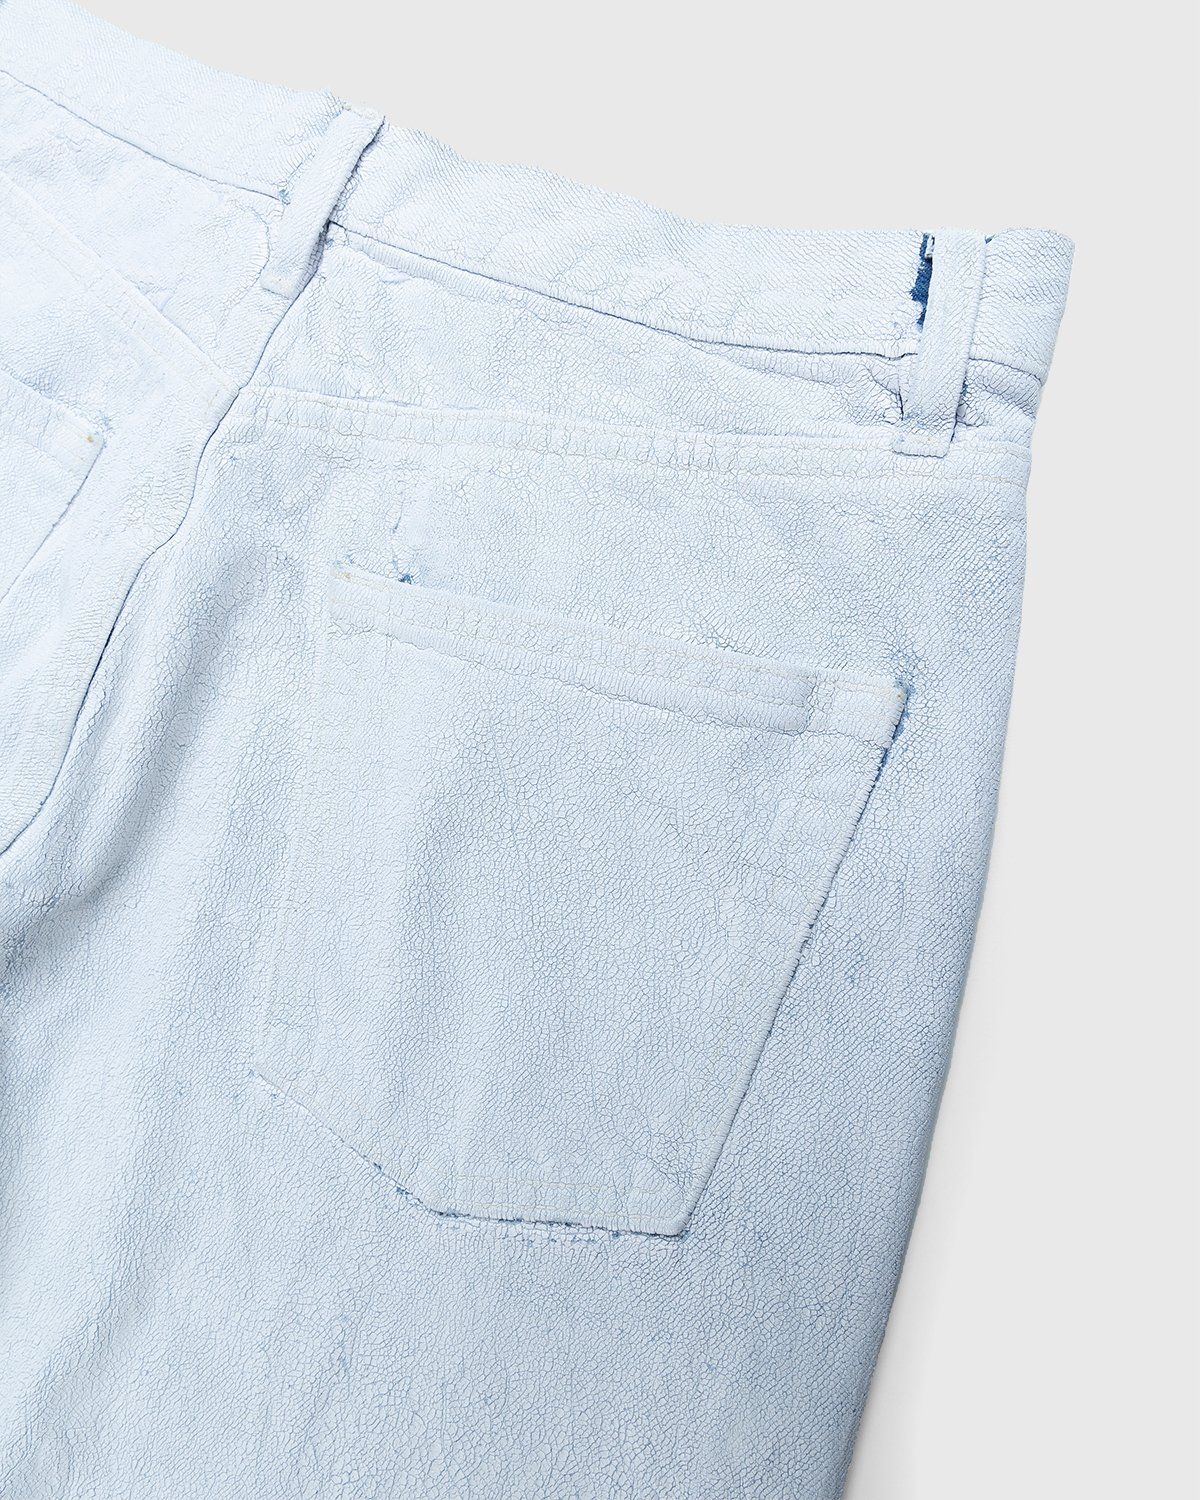 Maison Margiela – Bianchetto Boyfriend Jeans White - Pants - White - Image 4